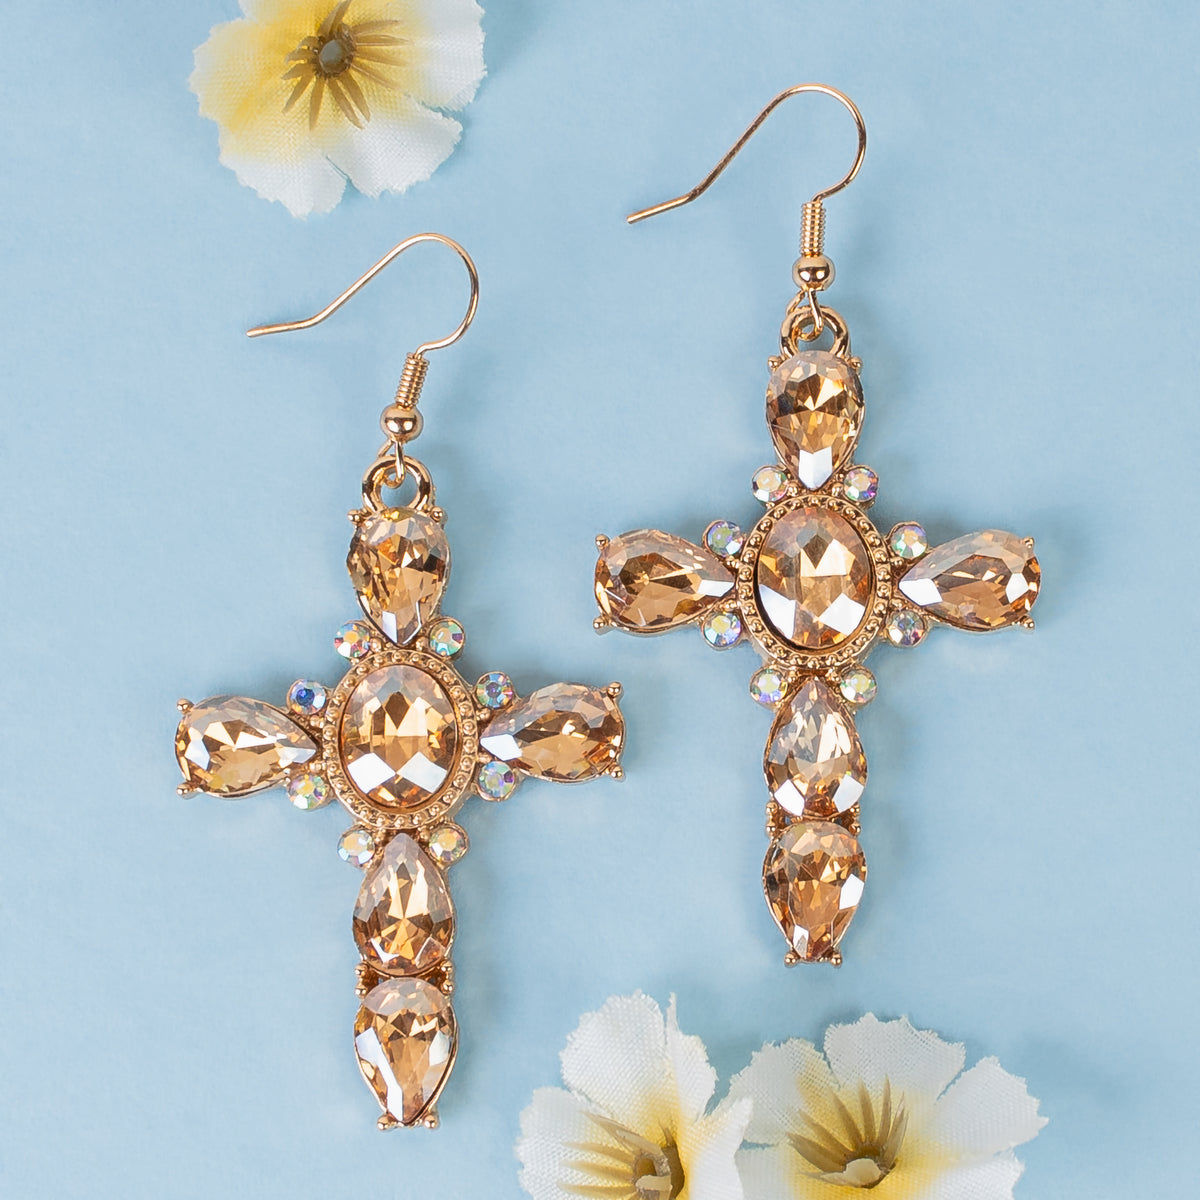 1326 - Rhinestone Cross Earrings - Gold